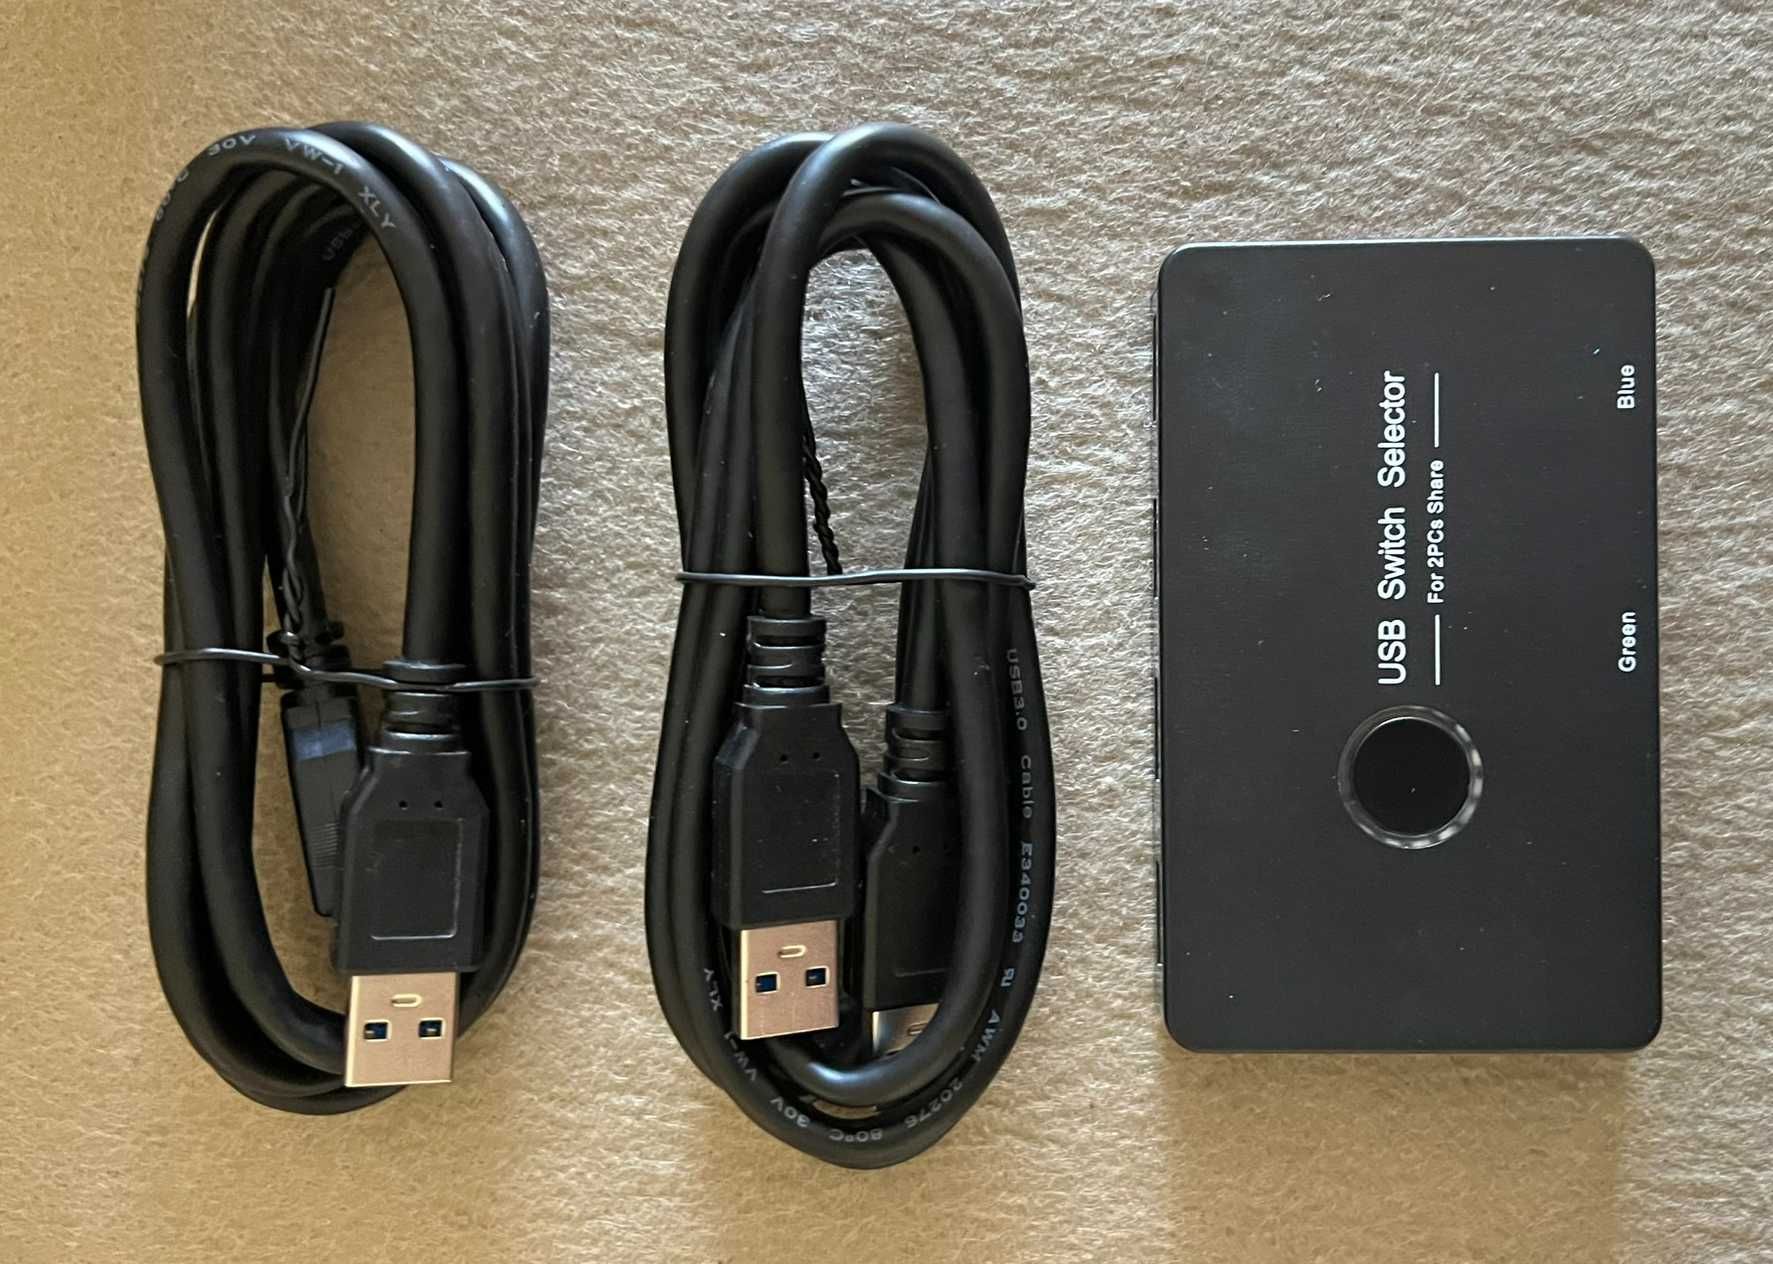 HUB USB 3.0 (4 portas) com Switch/KVM para 2 computadores